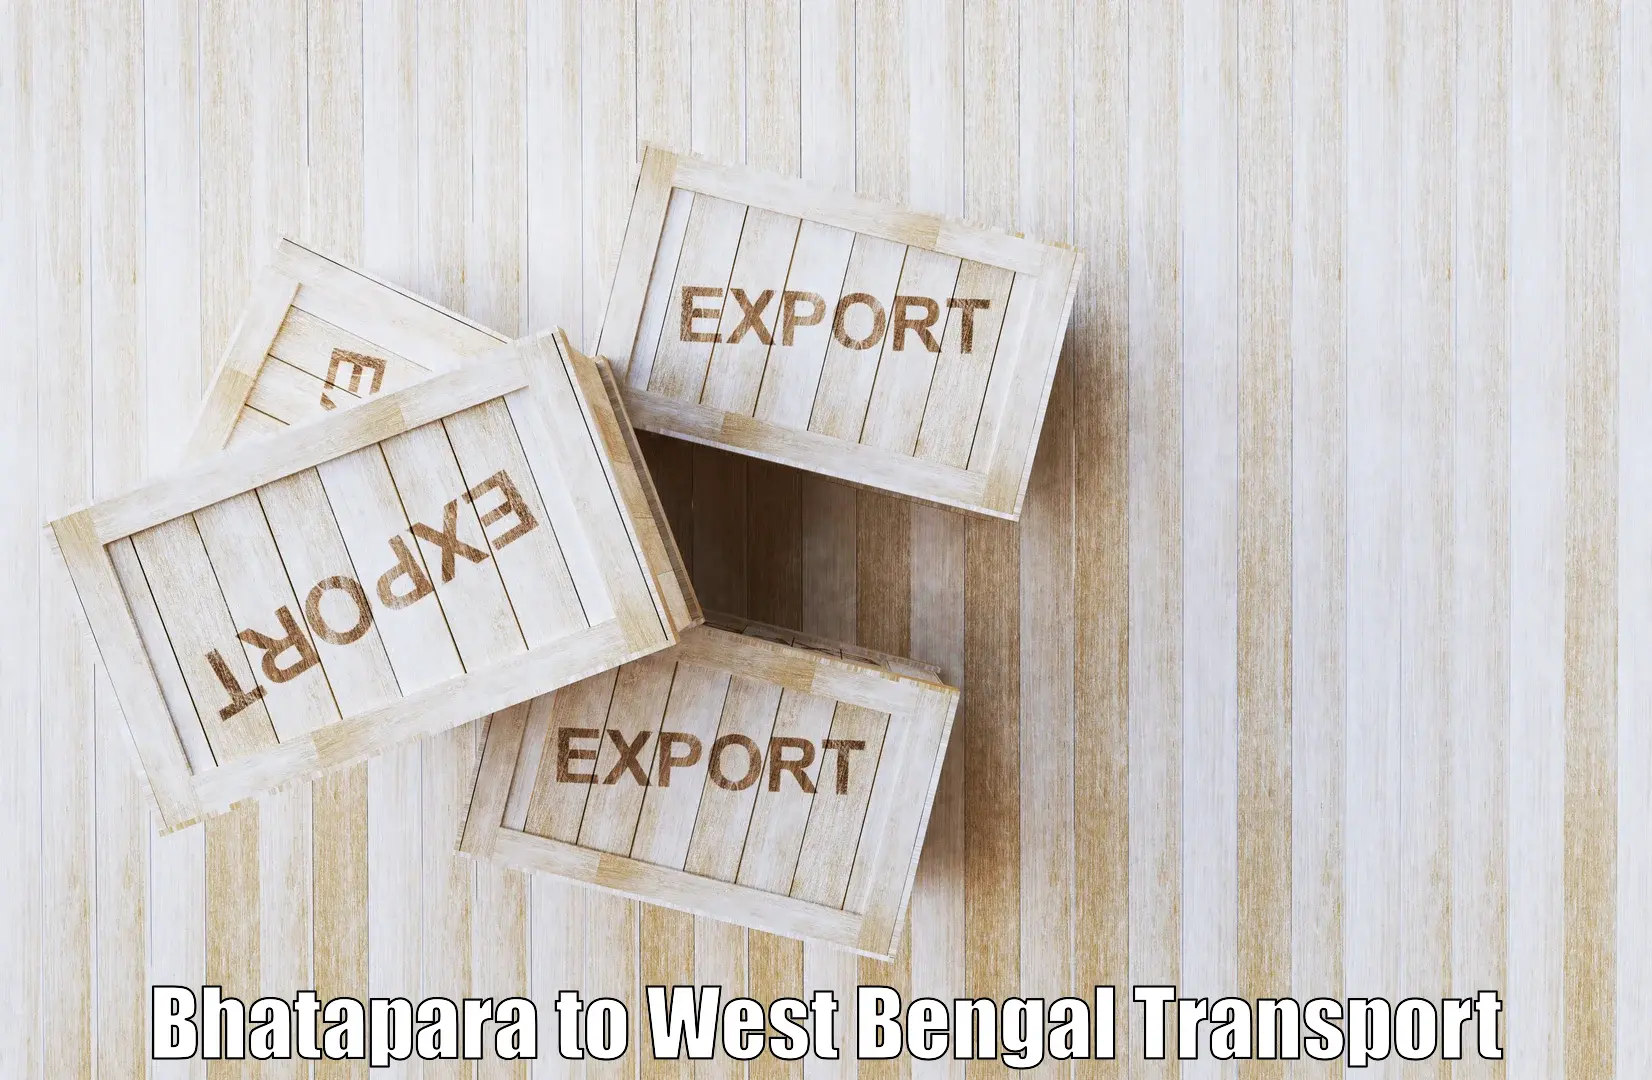 Truck transport companies in India Bhatapara to Raghunathpur